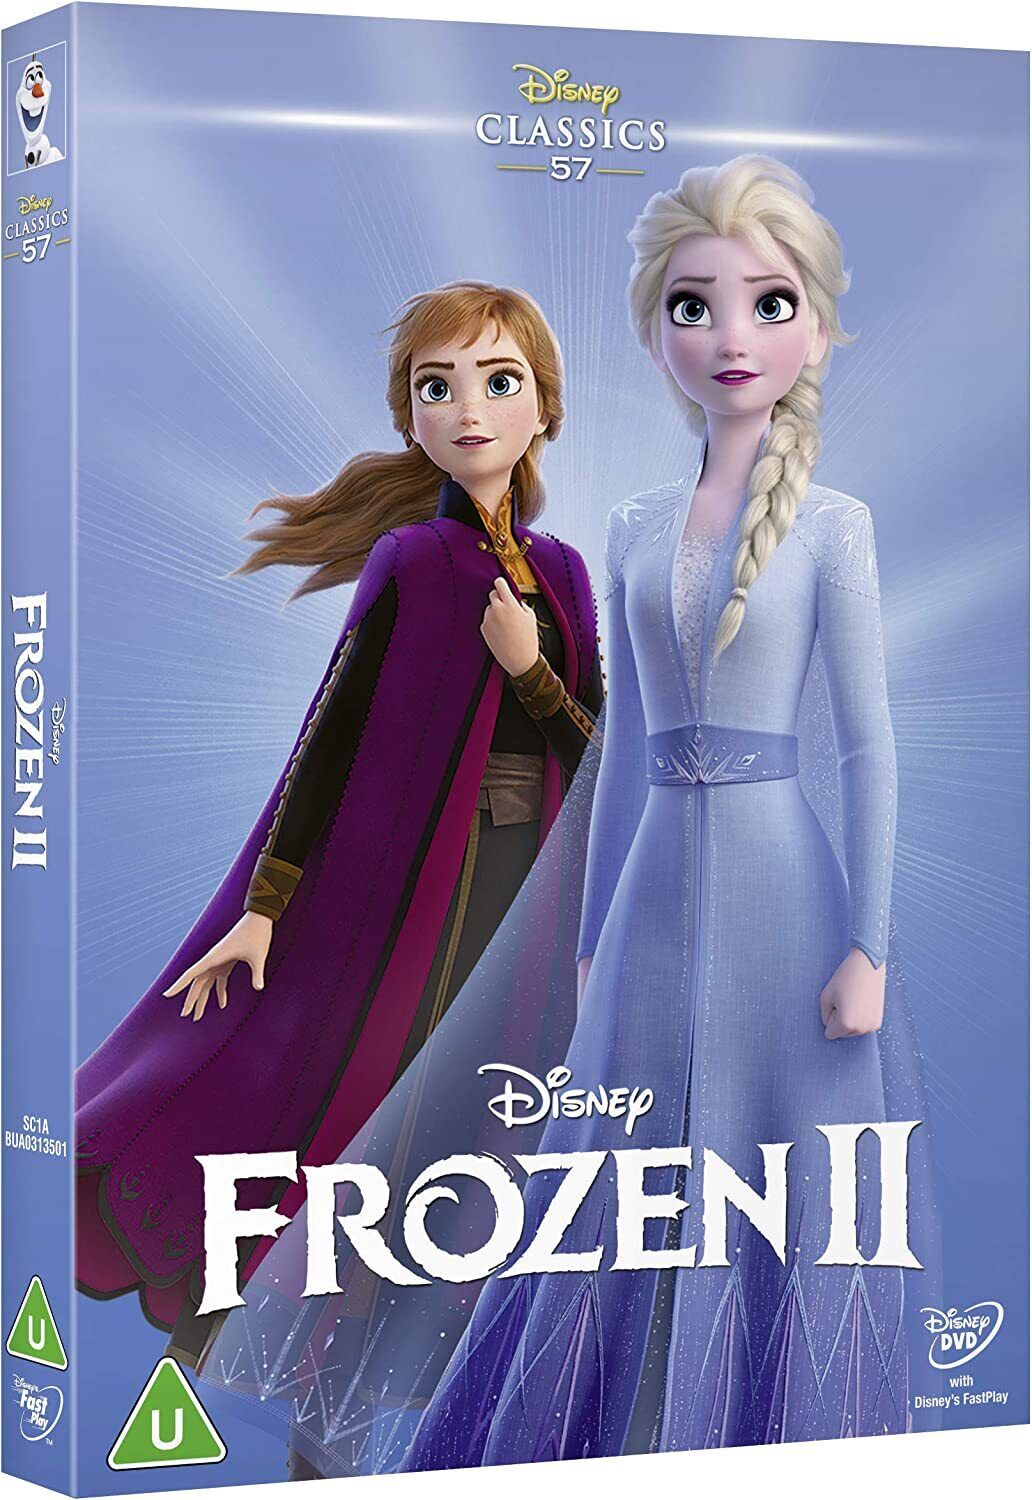 Voorstel Koninklijke familie Humanistisch Disney's Frozen 2 (DVD) Kristen Bell Idina Menzel Josh Gad Jonathan (UK  IMPORT) 8717418561772 | eBay